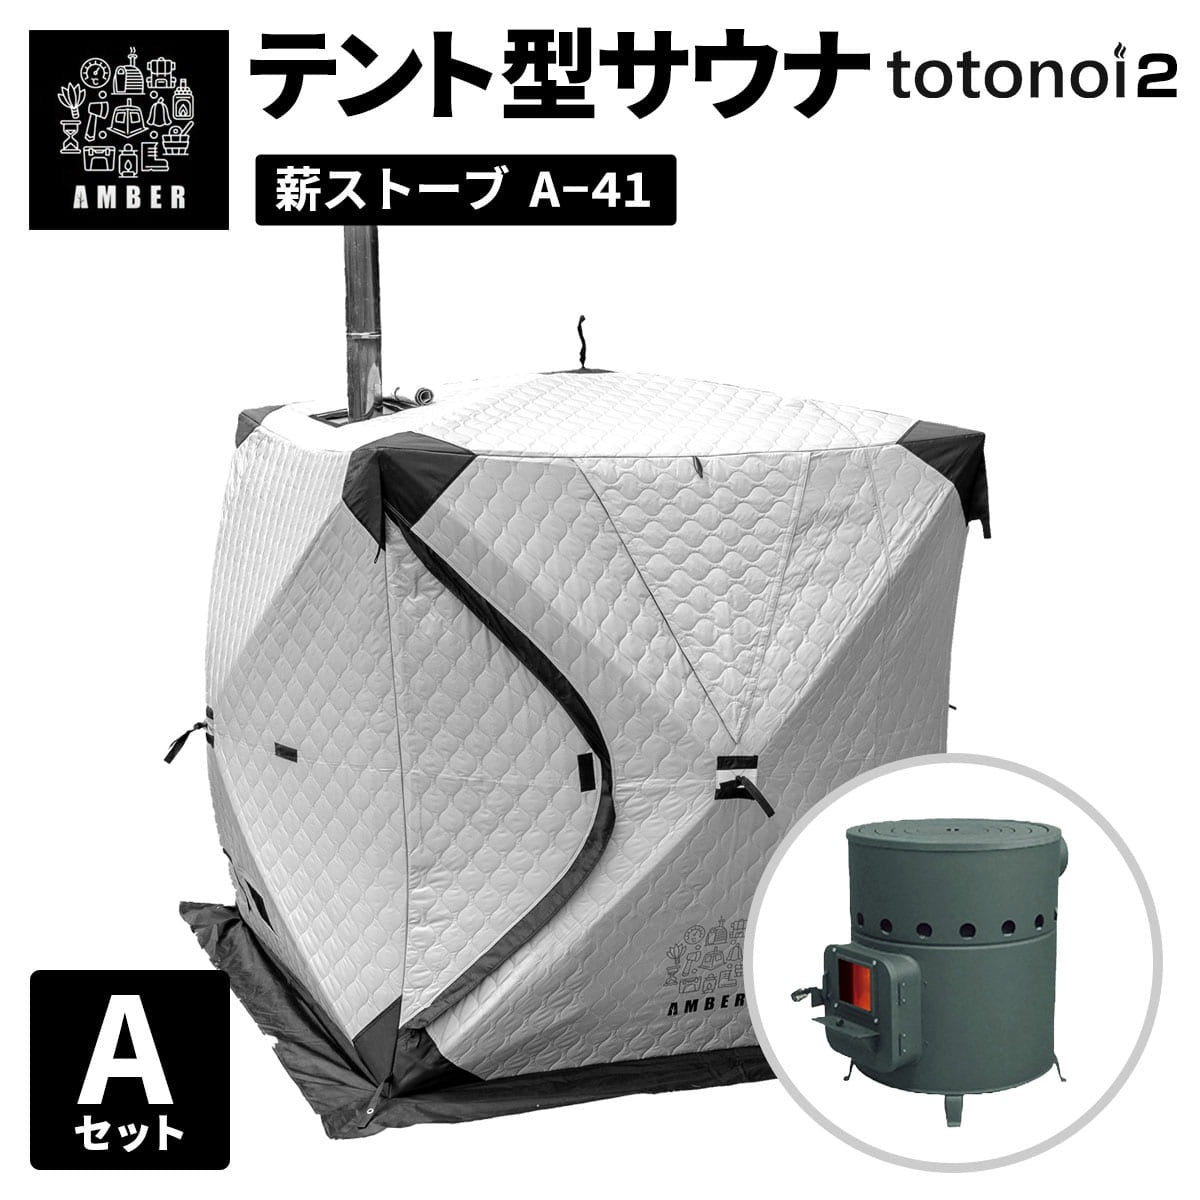 AMBER テント型サウナ totonoi2 (Aセット)ストーブコンロセット A-41【ホンマ製作所製】